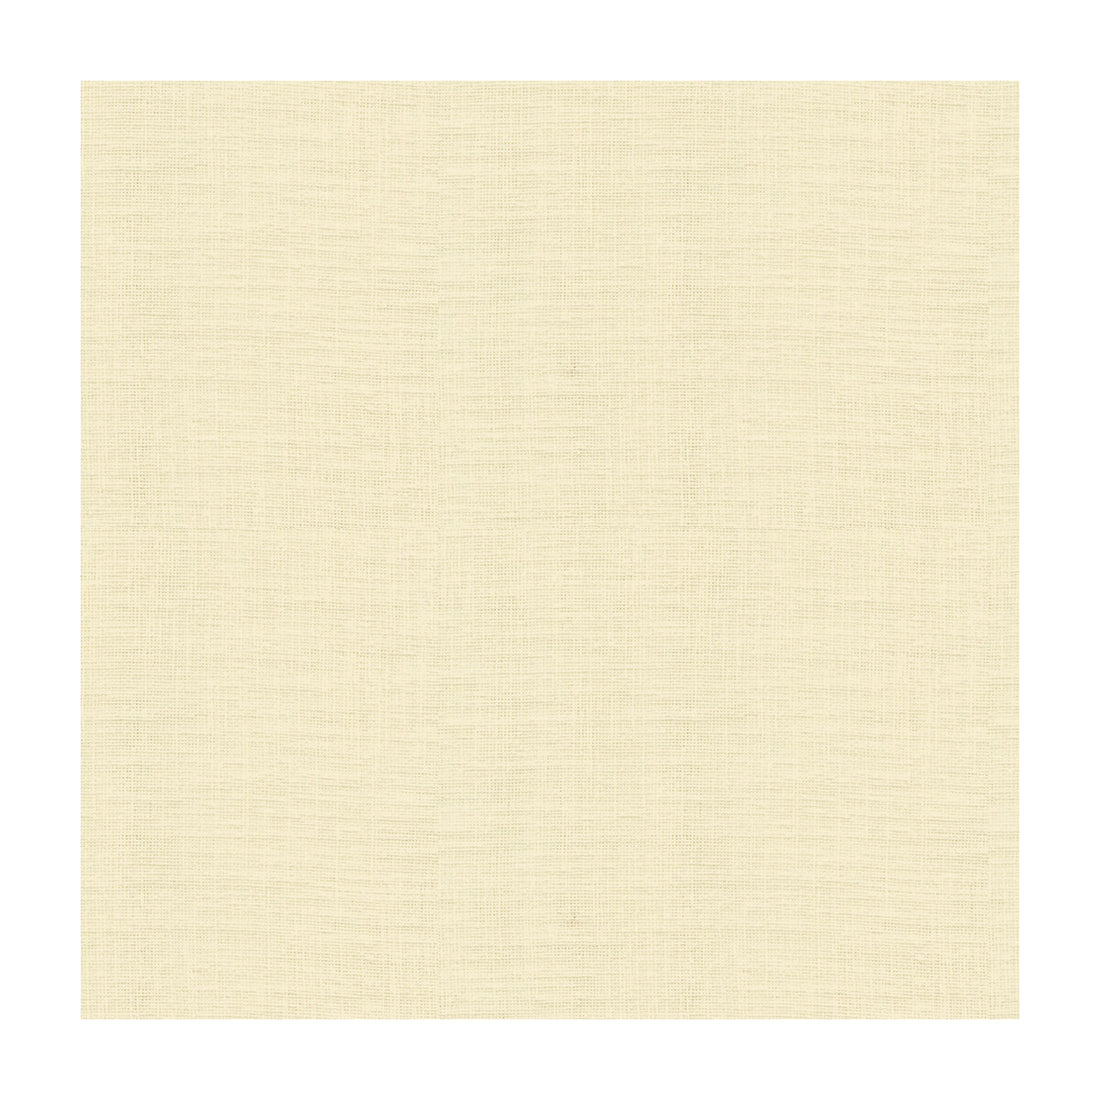 Kravet Basics fabric in 4110-111 color - pattern 4110.111.0 - by Kravet Basics